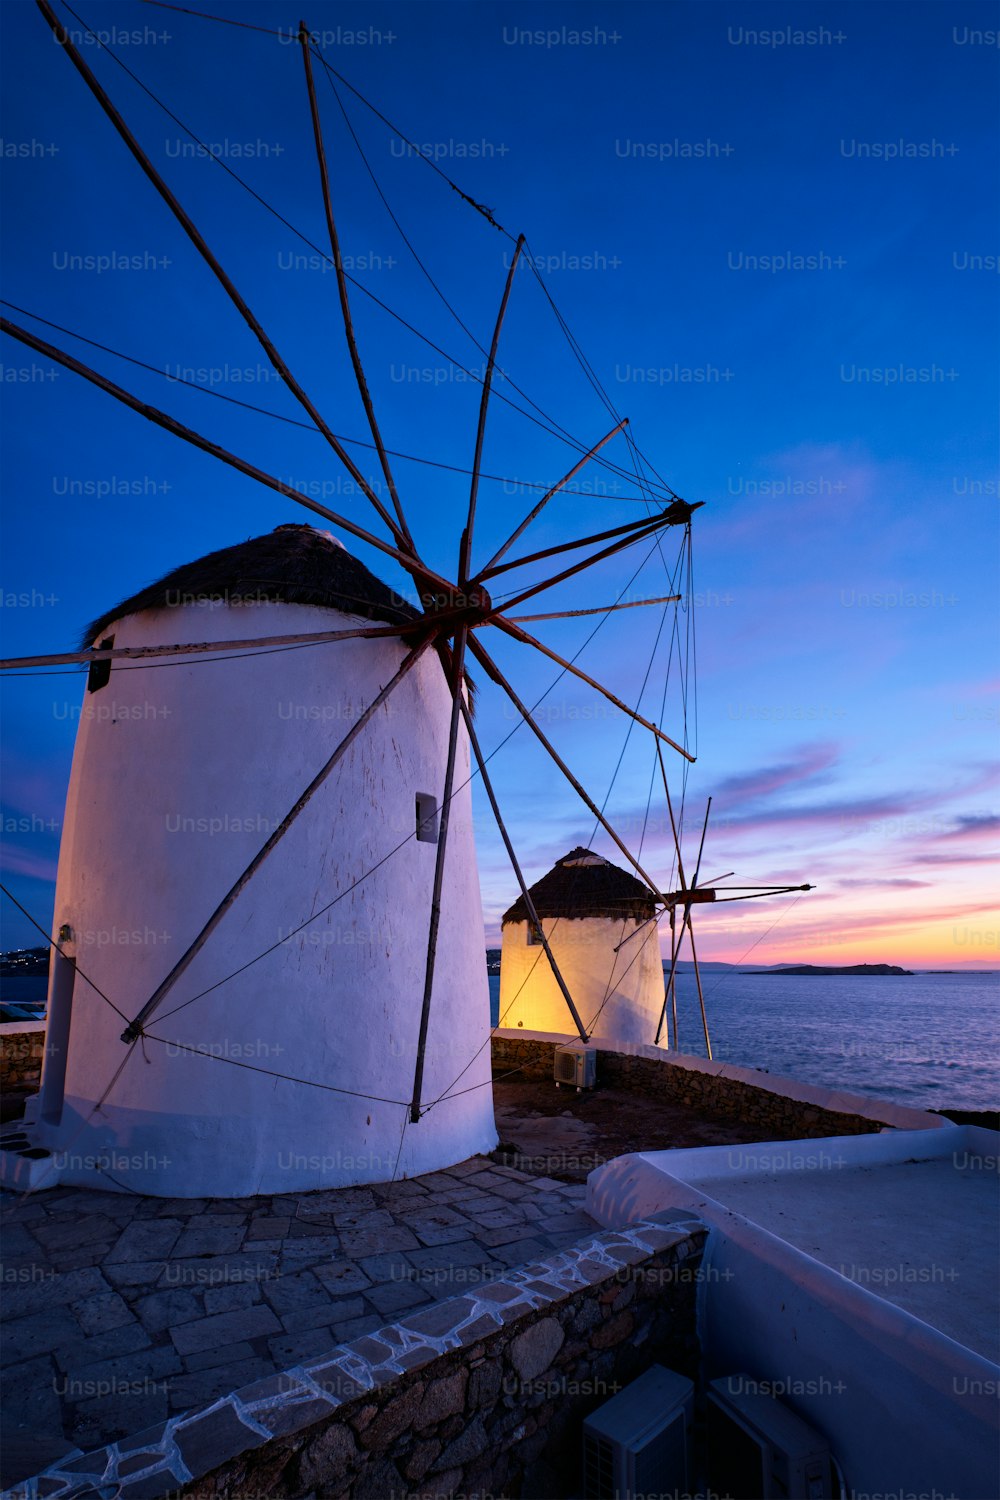 Vue panoramique sur les célèbres moulins à vent de la ville de Mykonos Chora. Moulins à vent grecs traditionnels sur l’île de Mykonos illuminés le soir, Cyclades, Grèce. Marcher avec steadycam.